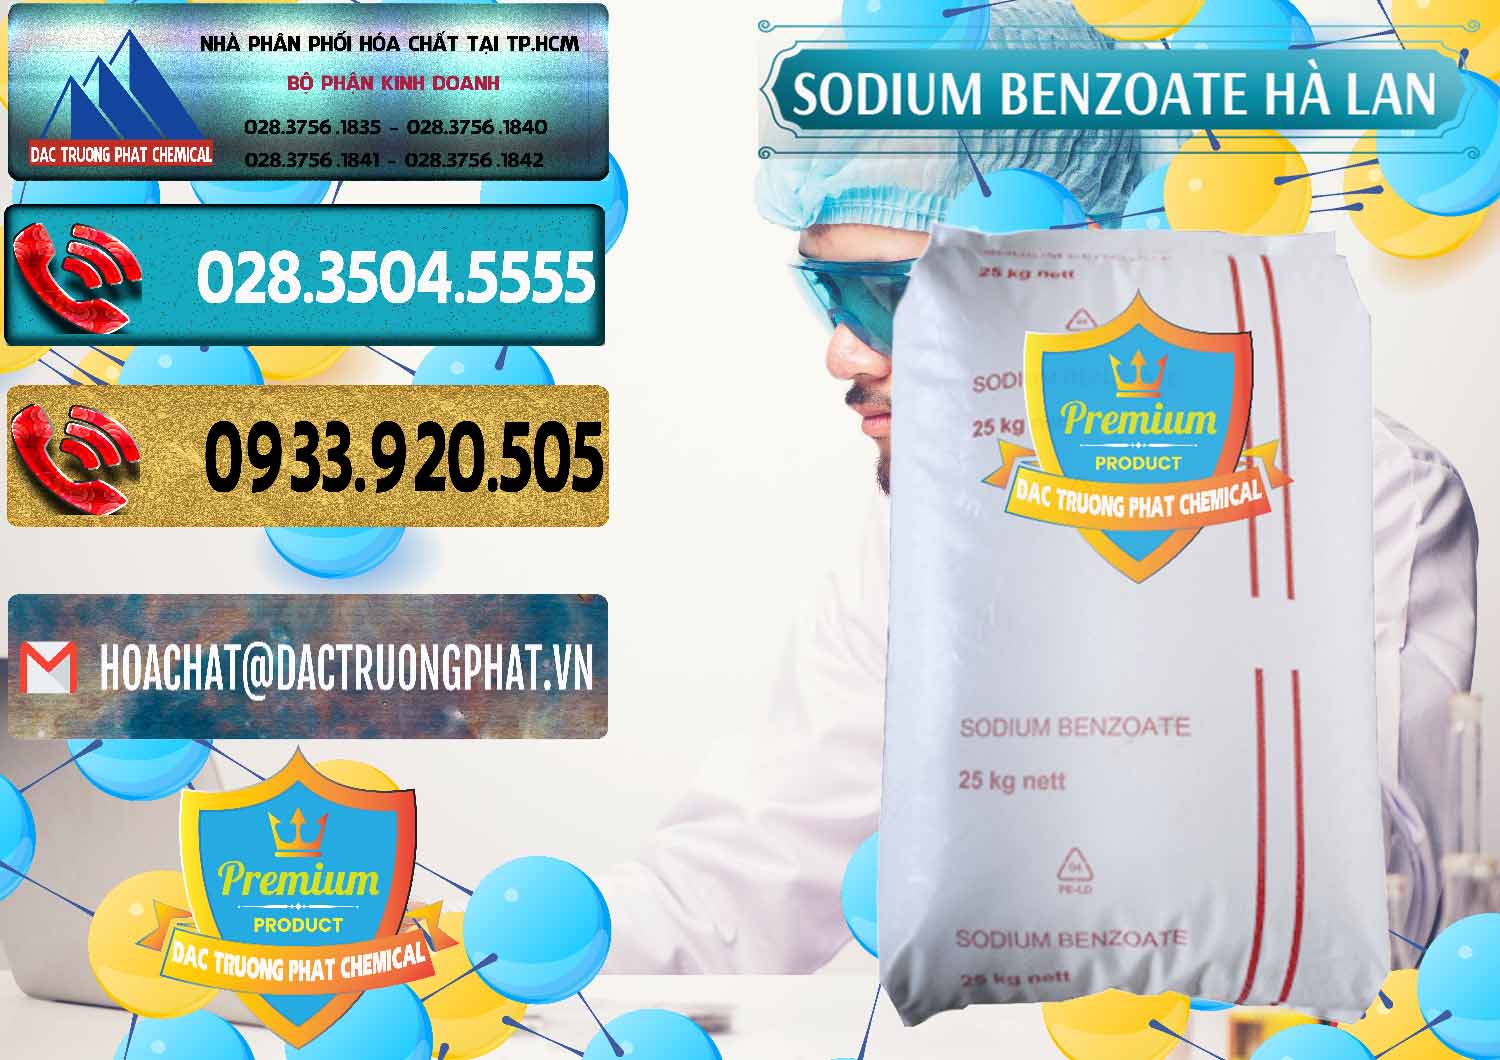 Đơn vị bán và phân phối Sodium Benzoate - Mốc Bột Chữ Cam Hà Lan Netherlands - 0360 - Công ty chuyên nhập khẩu - phân phối hóa chất tại TP.HCM - hoachatdetnhuom.com